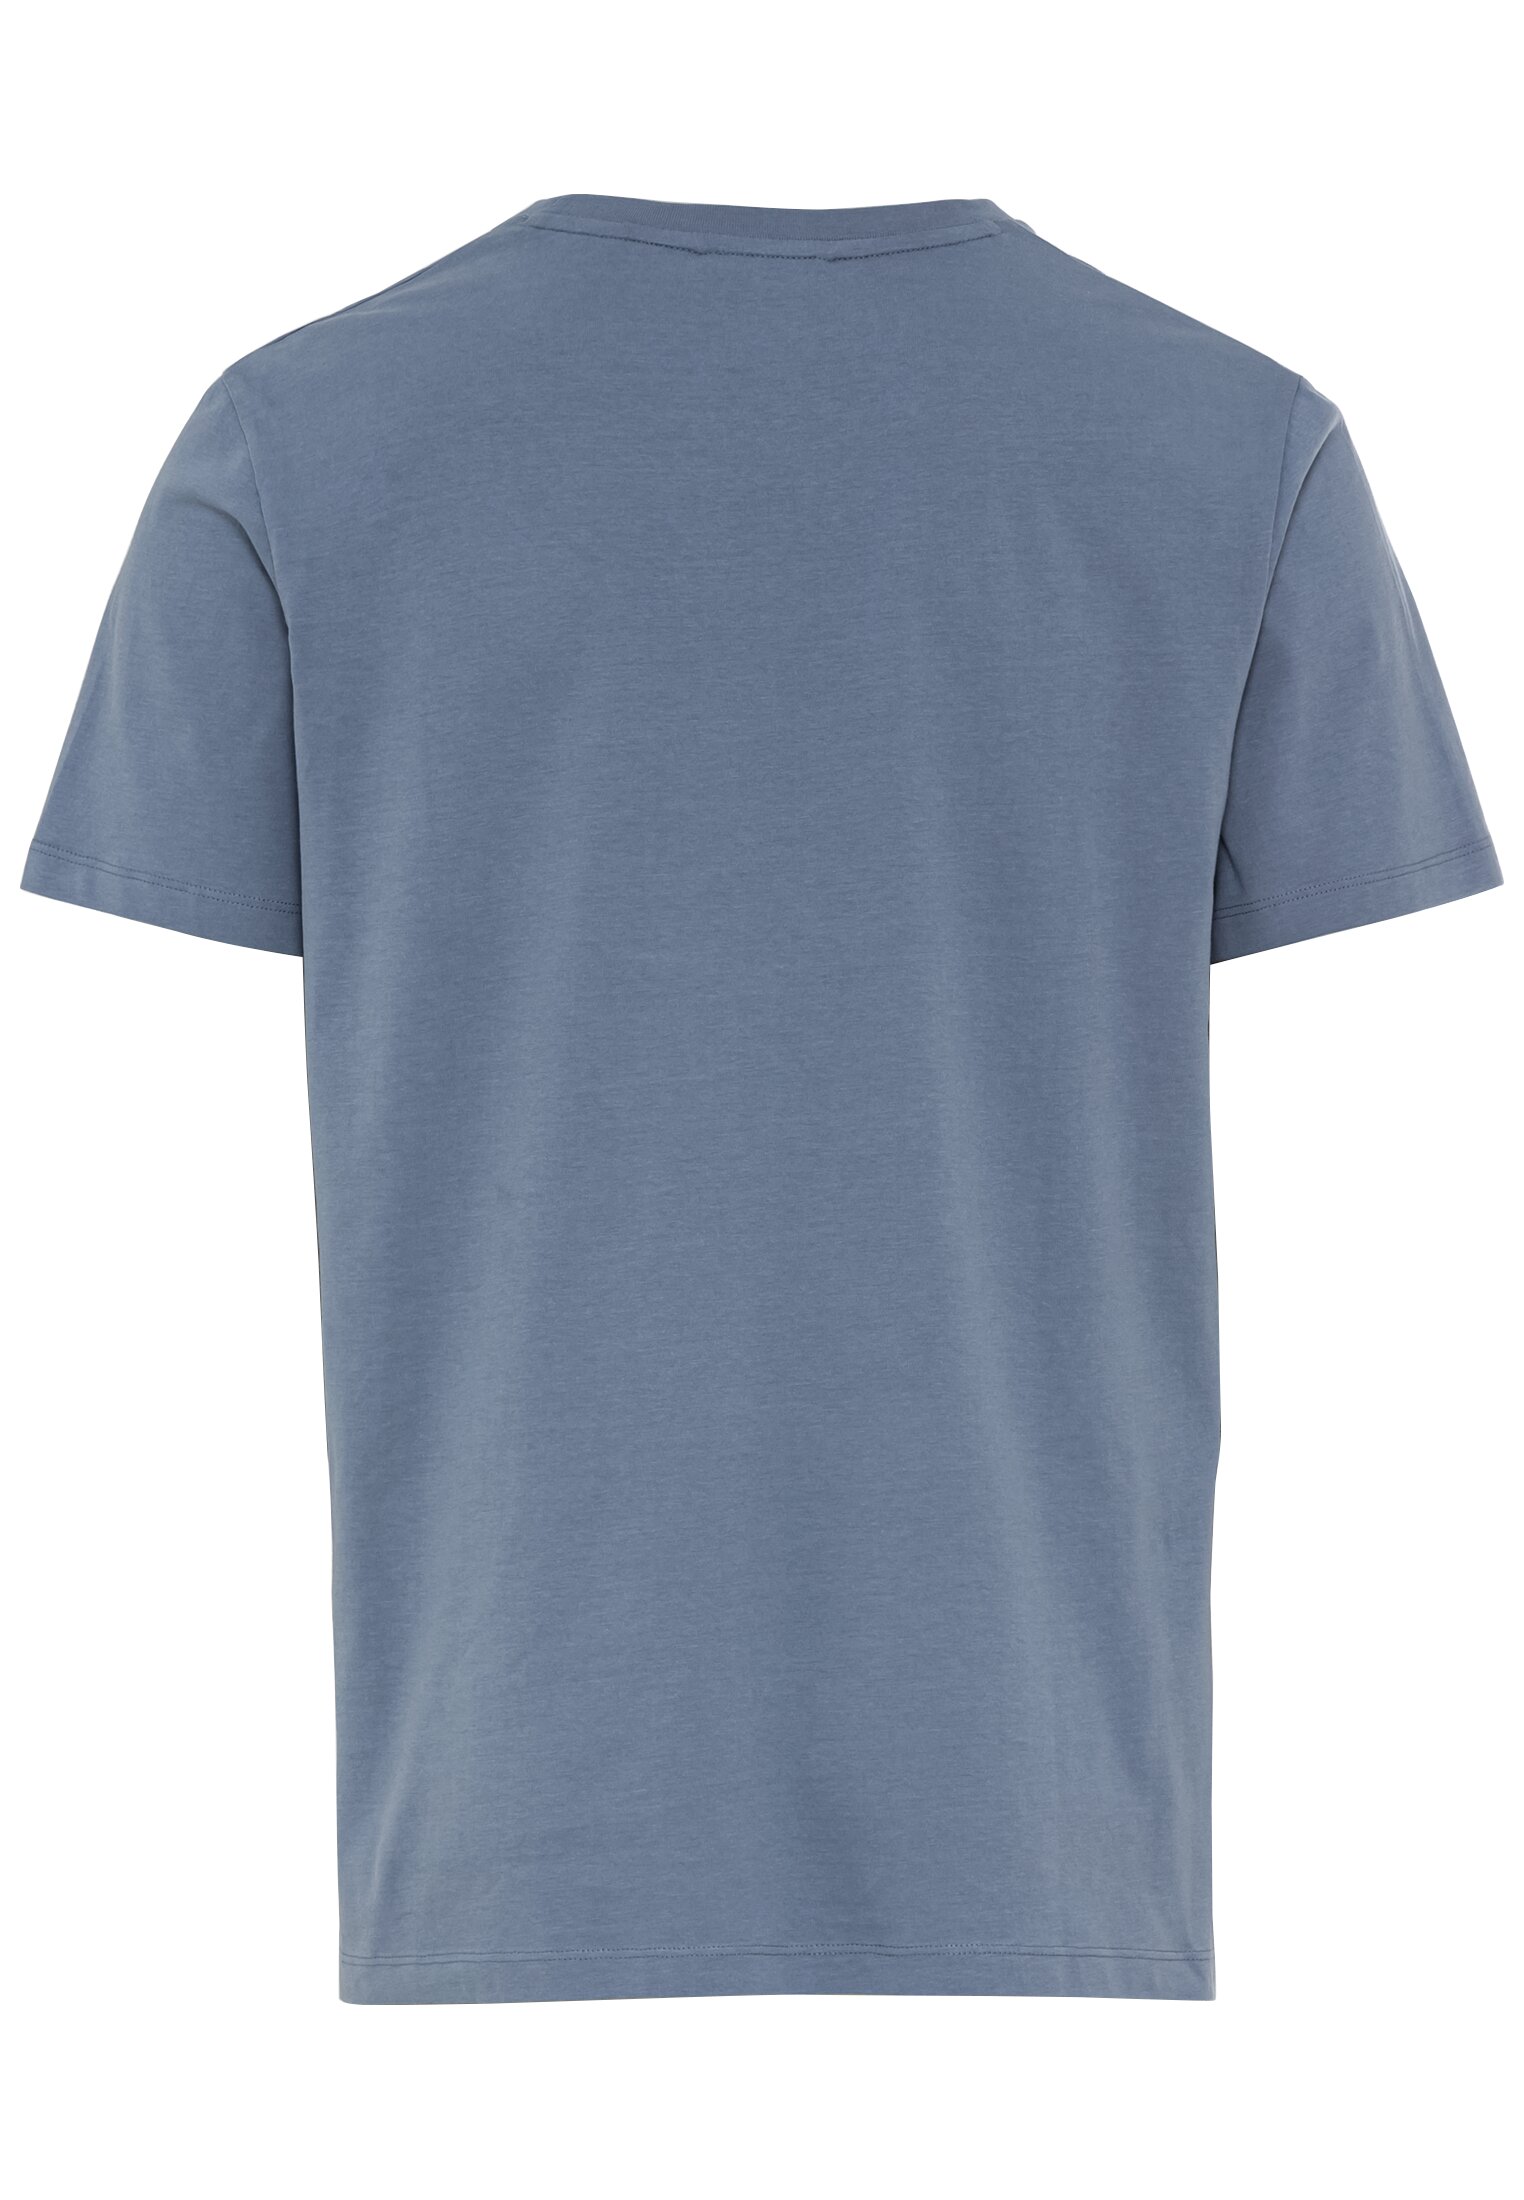 Мужская футболка Camel Active, голубая, цвет голубой, размер 48 - фото 3